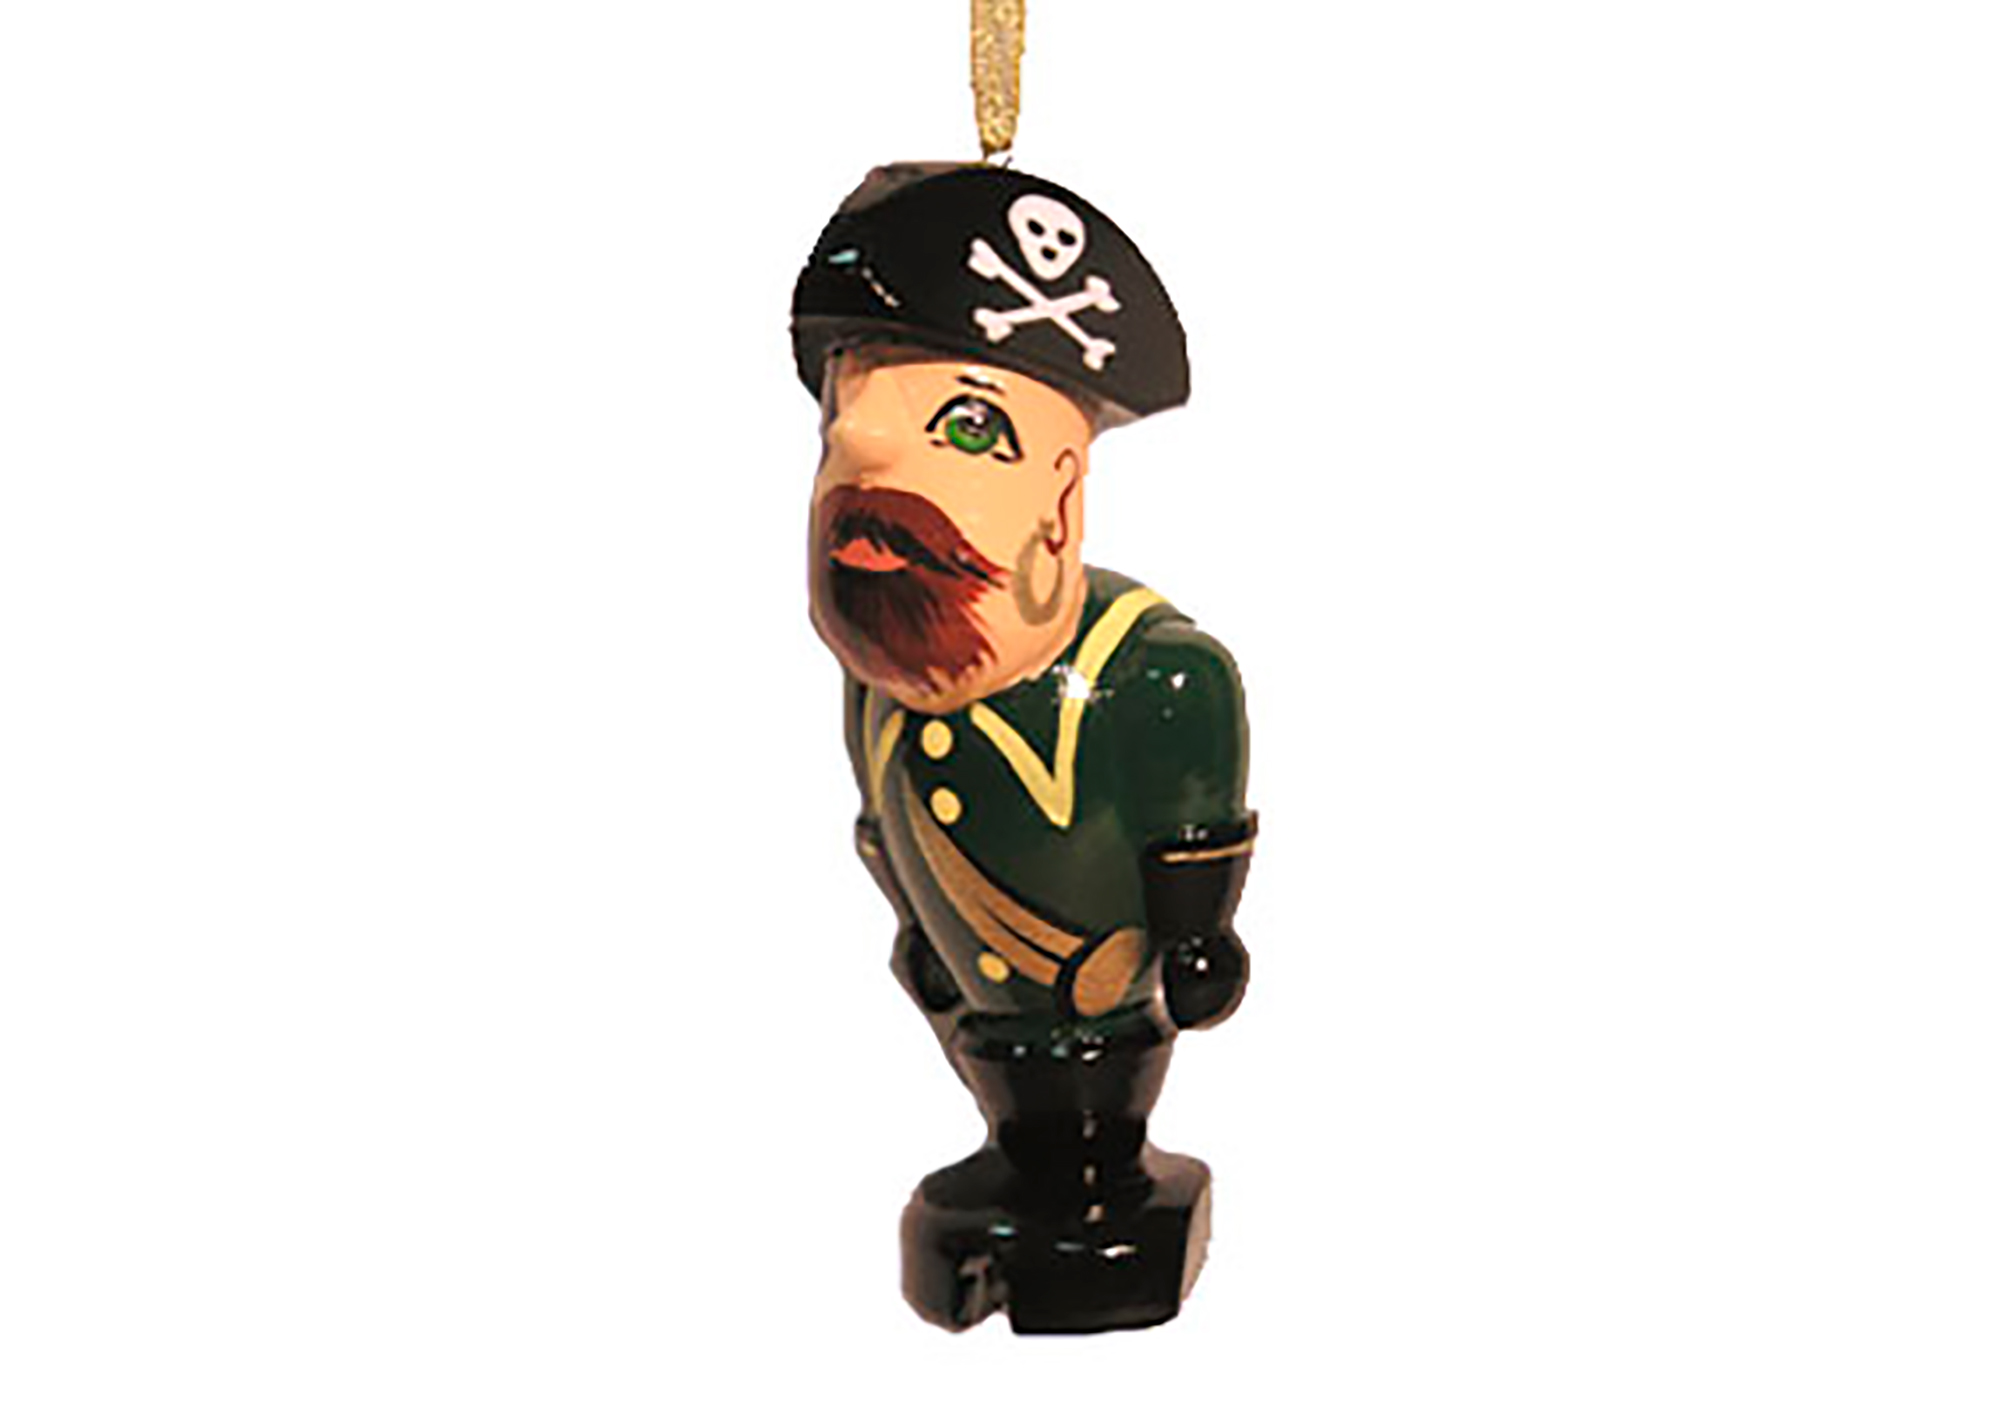 Buy Елочное украшение "Пират" 10 см at GoldenCockerel.com